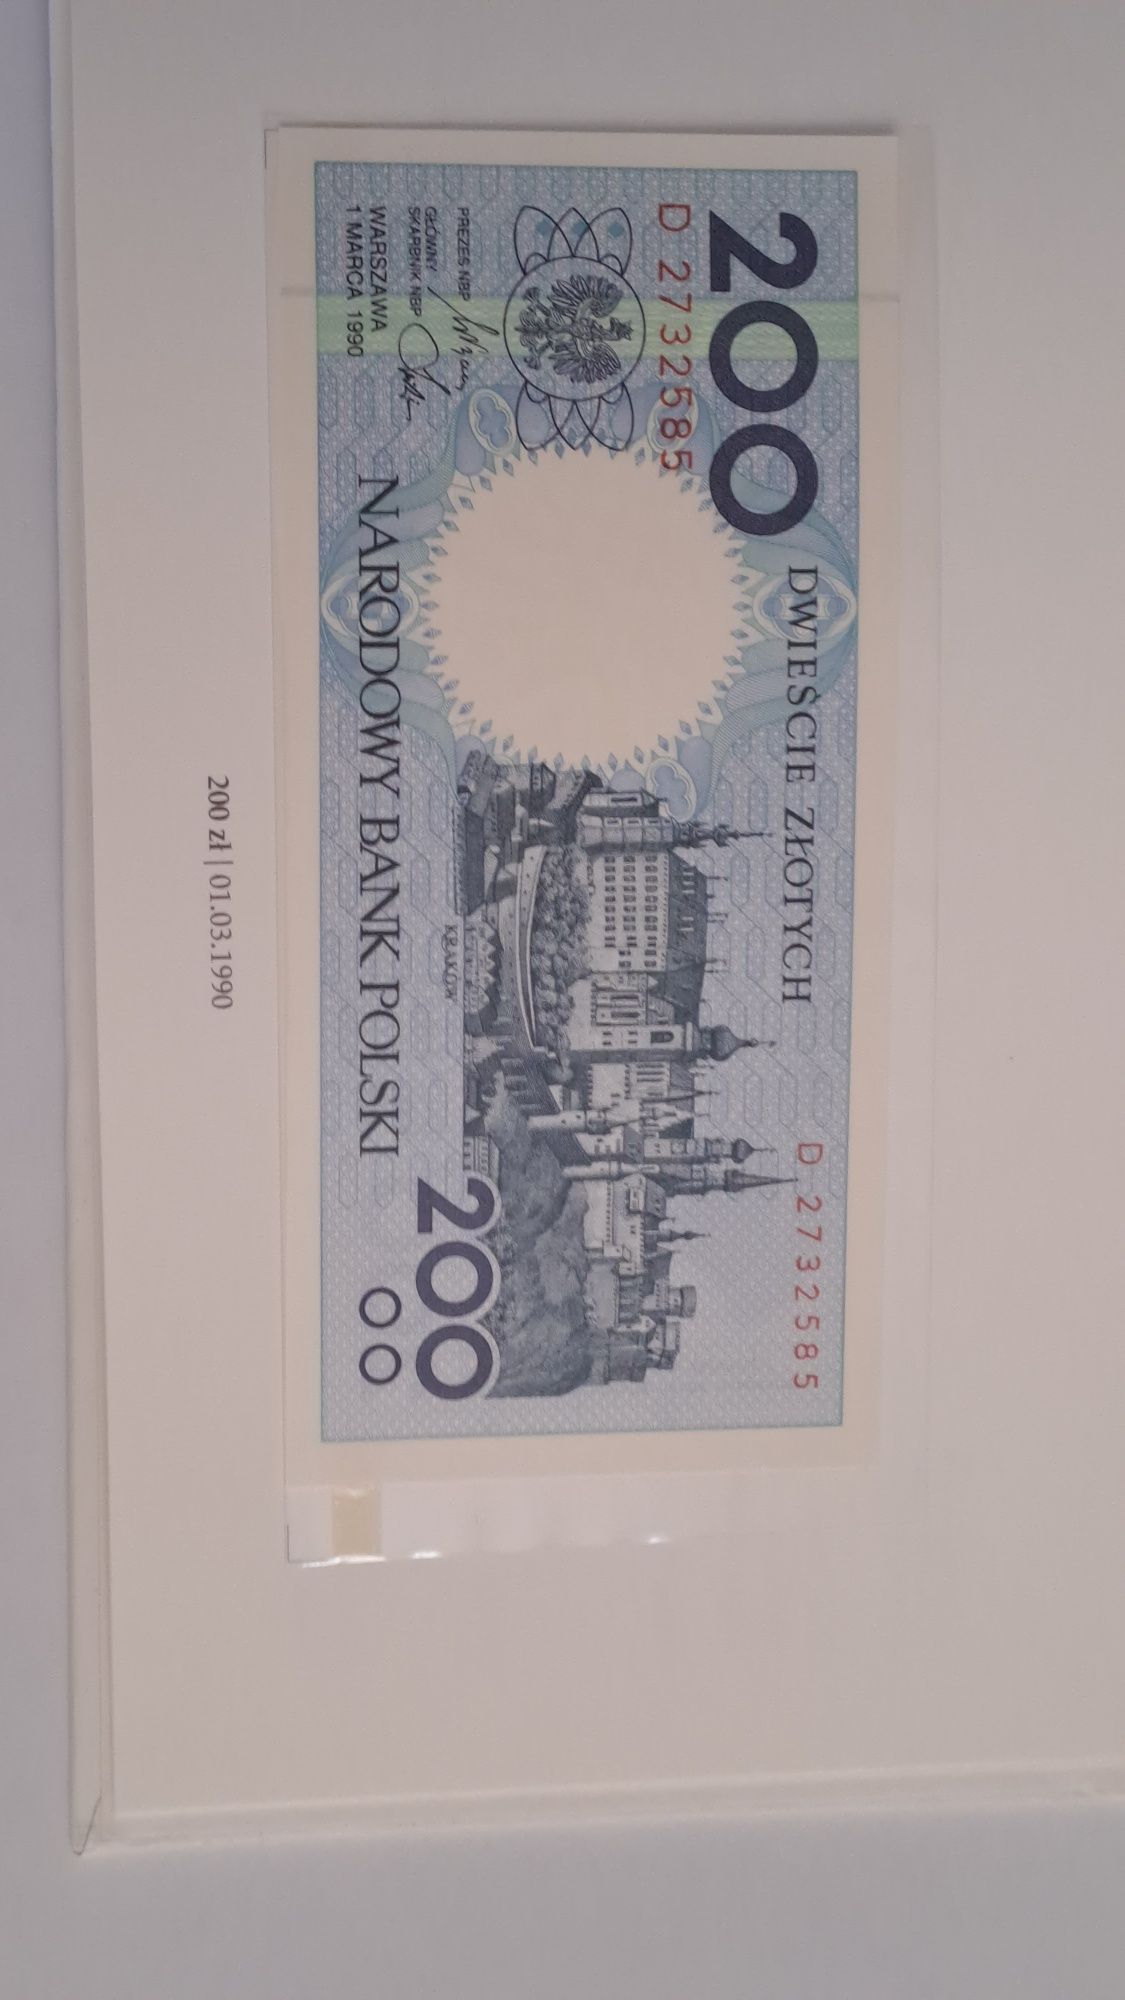 Zestaw Banknotów MIASTA POLSKI 1990+album.